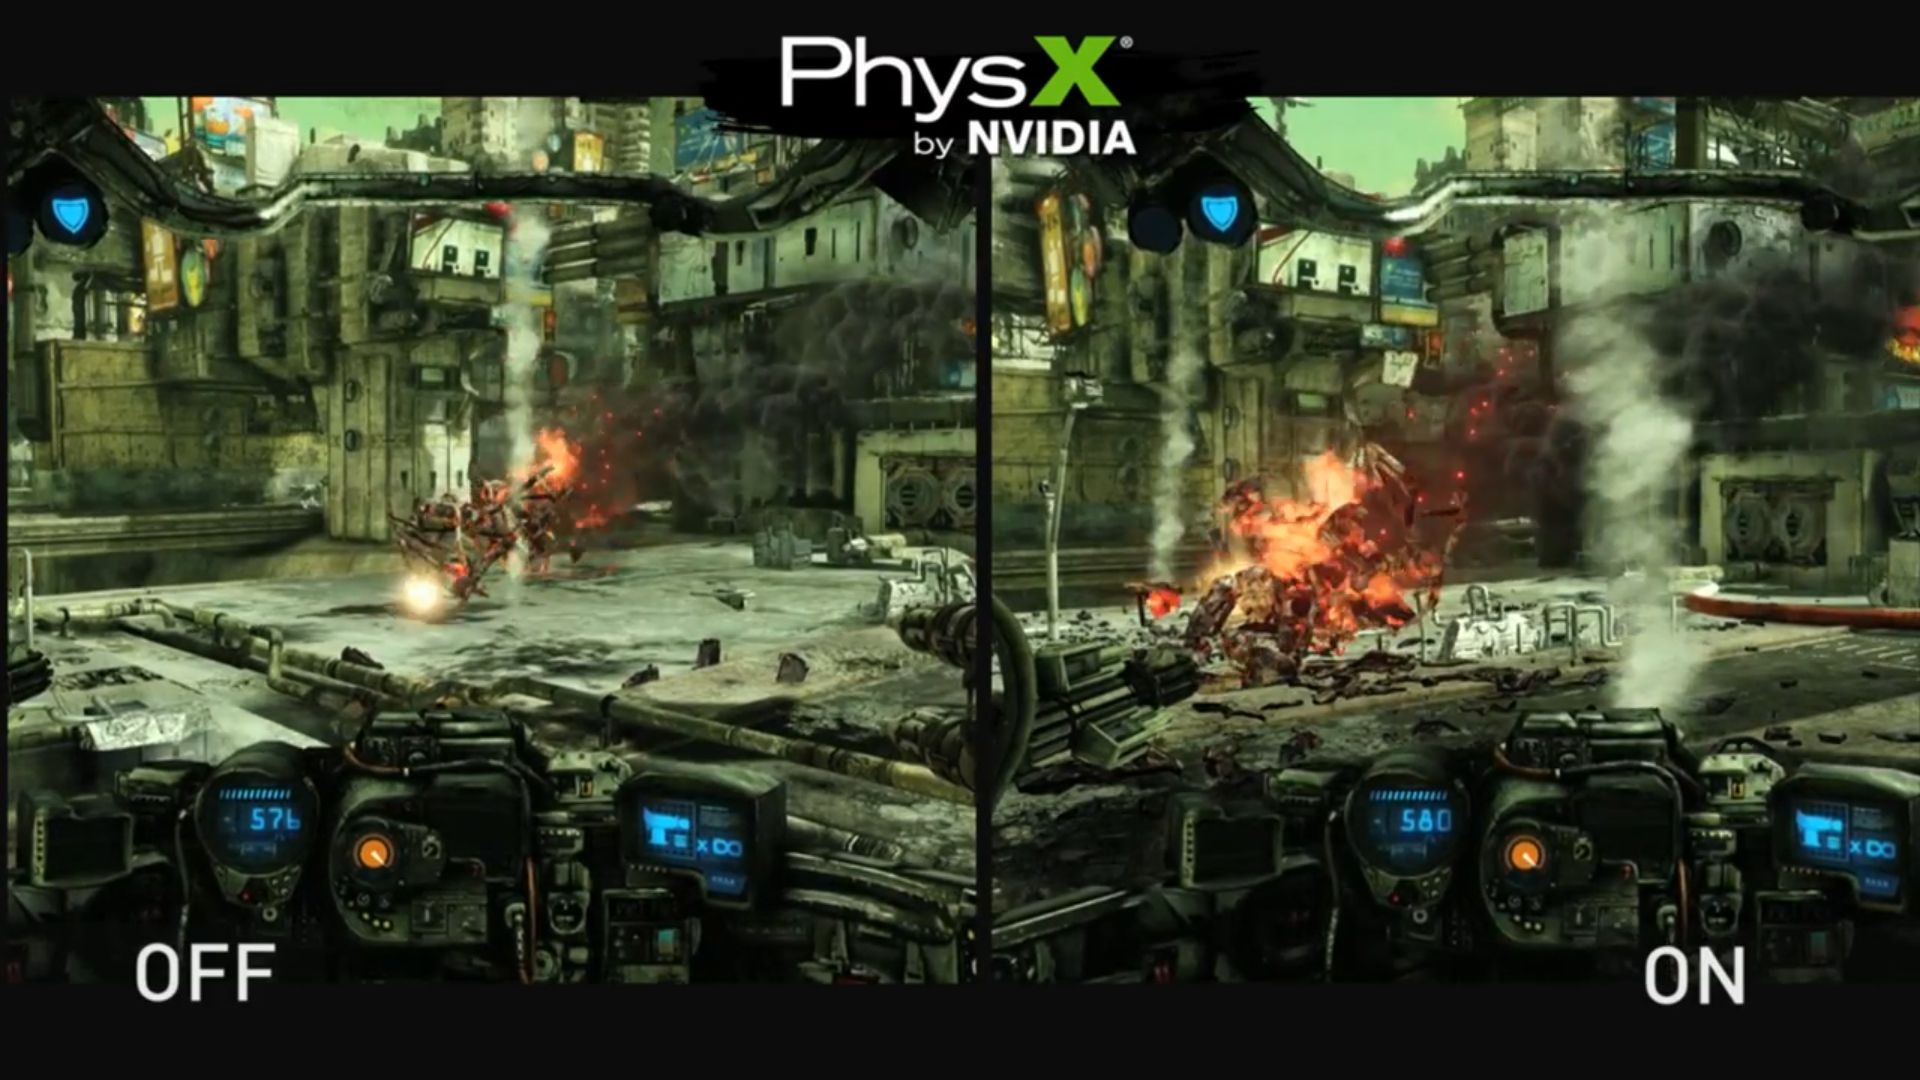 fugtighed praktiseret eksperimentel Nvidia Releases Hawken PhysX Trailer